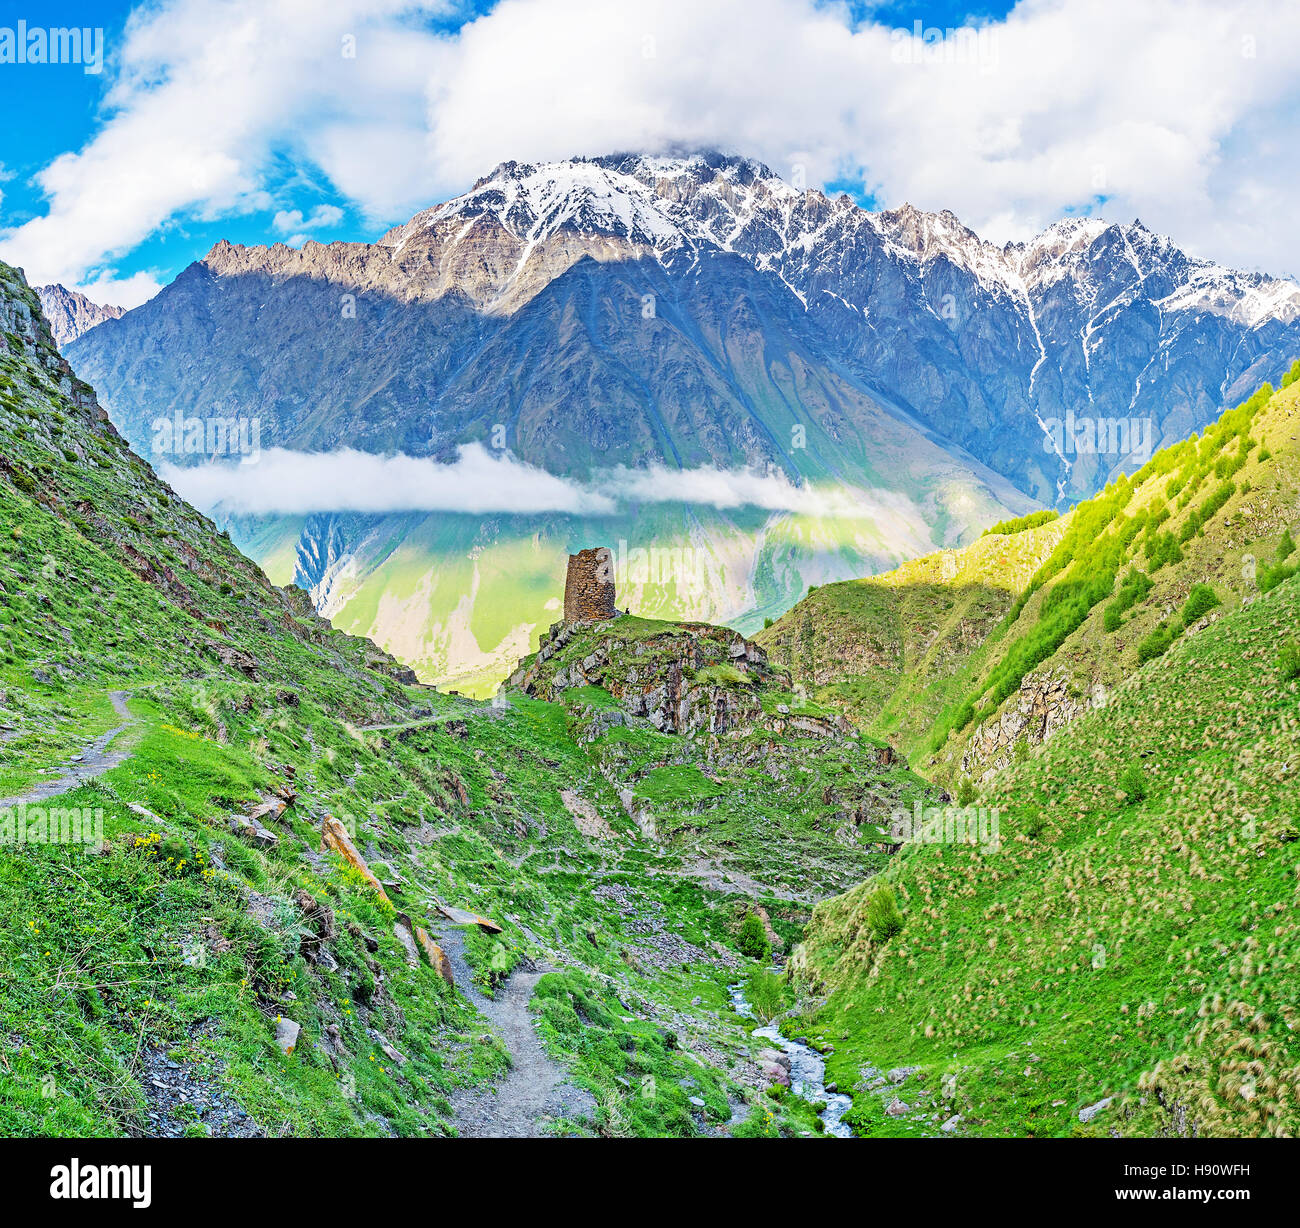 La tour en ruine parmi les gigantesques montagnes du Grand Caucase, situé entre et Gergeti Stepantsminda, Kazbegi, Géorgie. Banque D'Images